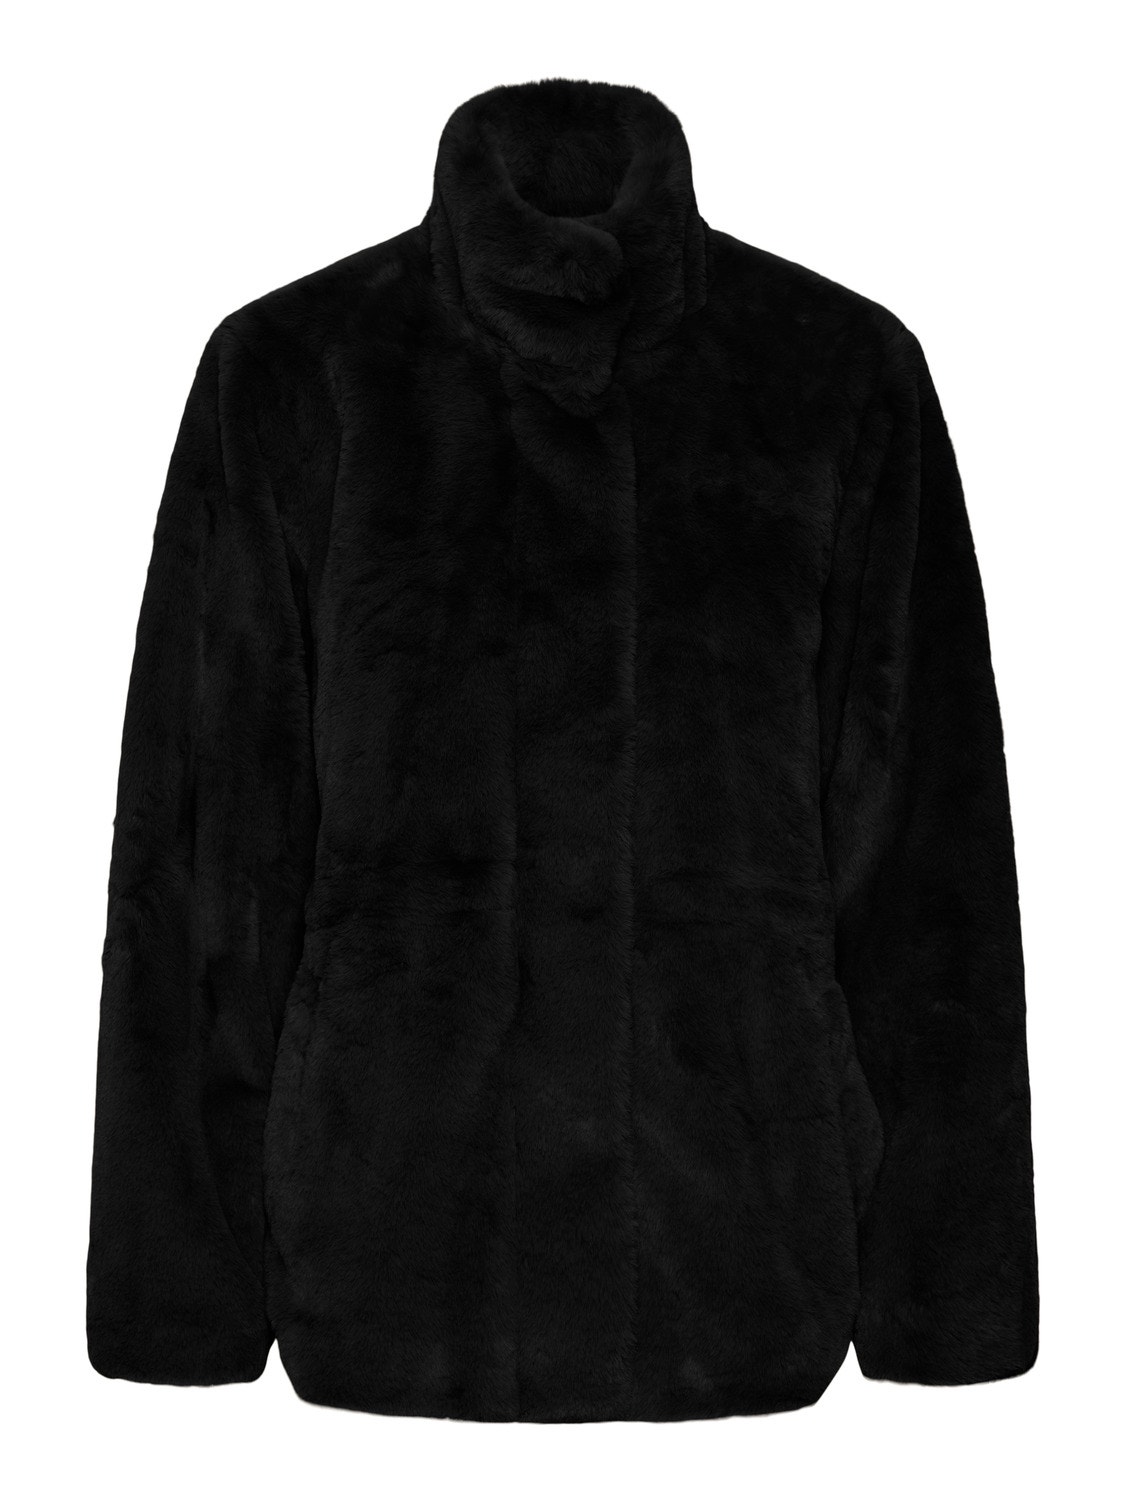 Vero Moda VMSONJAHOLLY Jacket -Black - 10289494